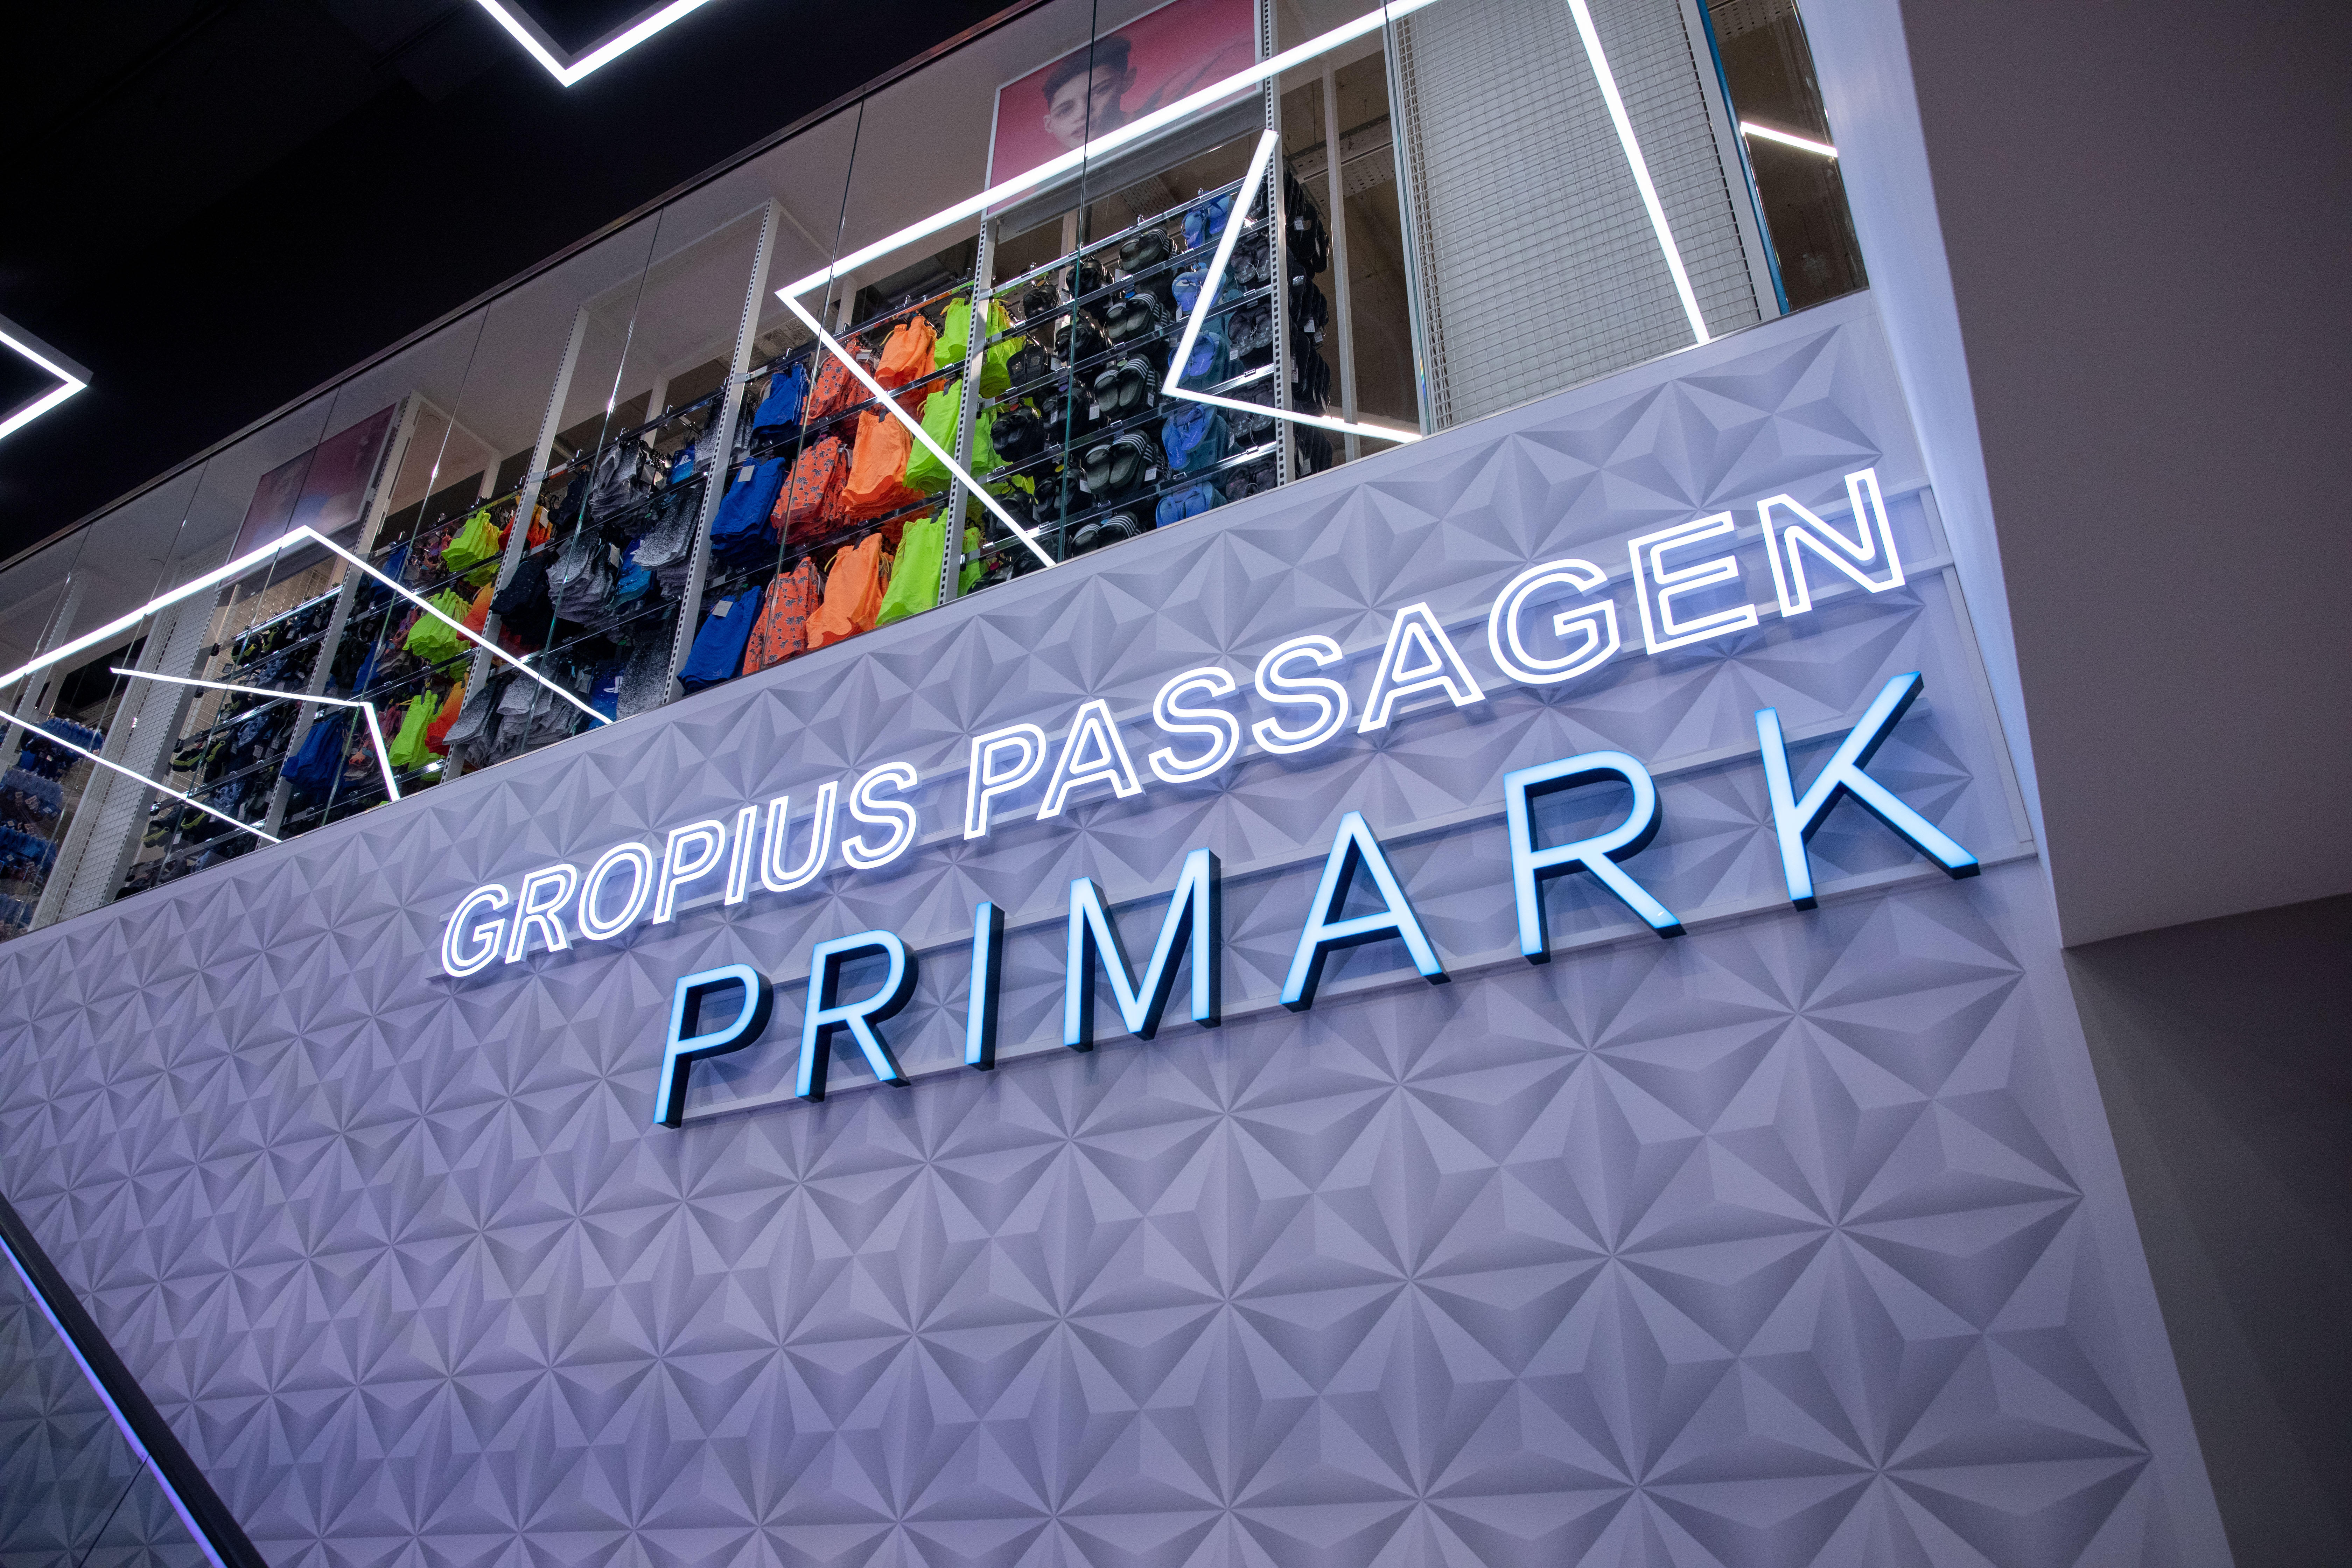 Primark, Gropius Passagen in Berlin